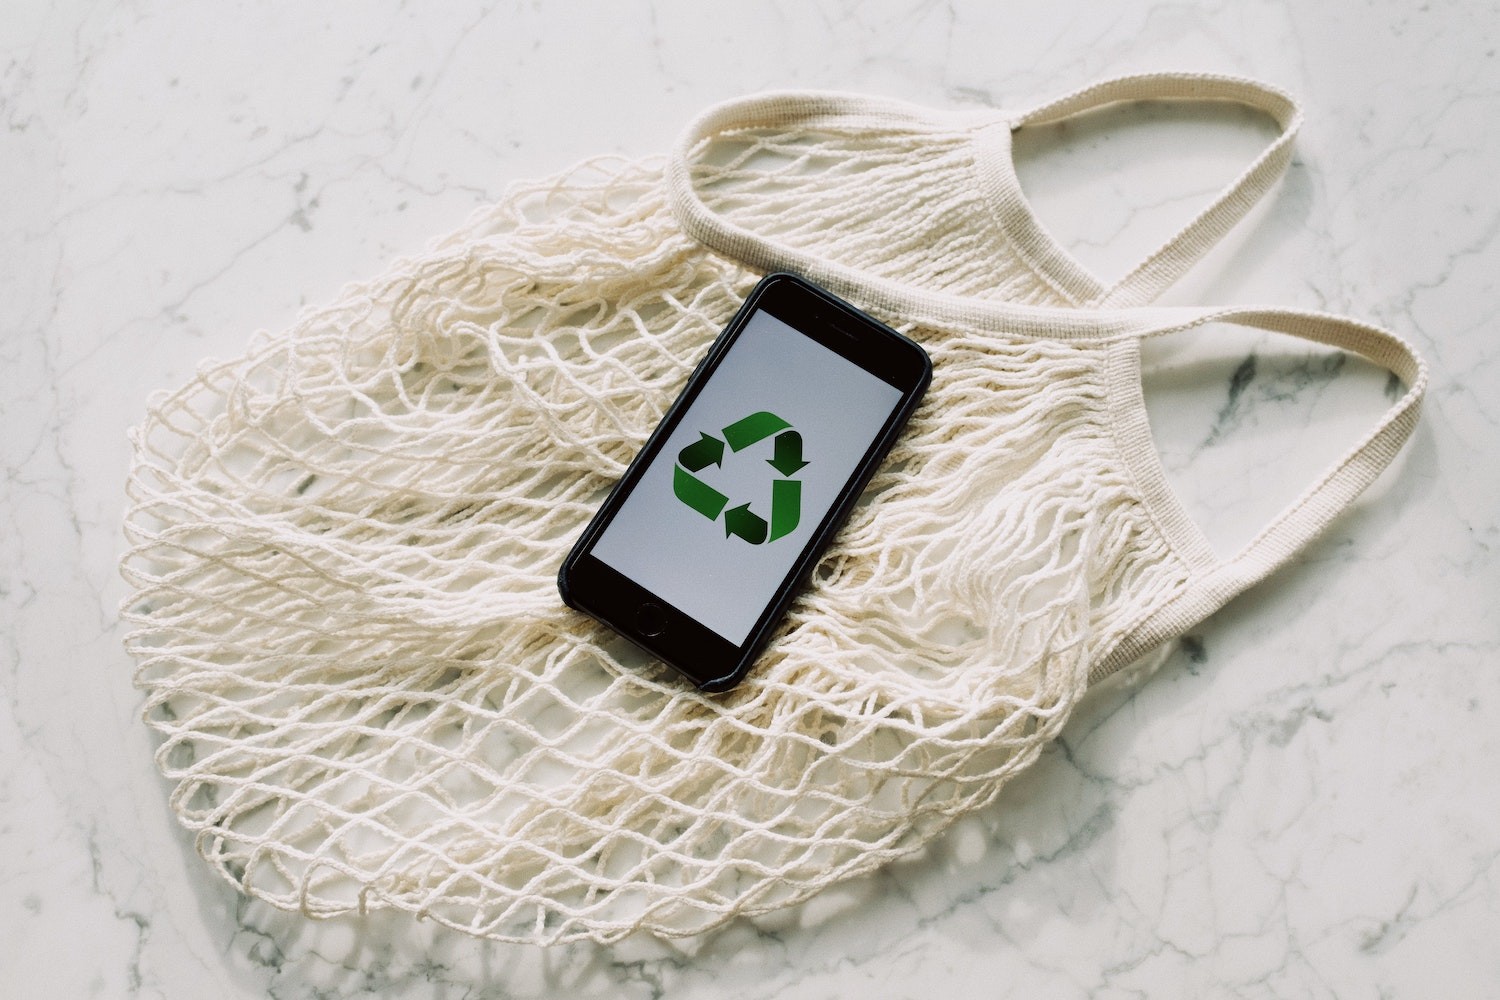 Estes aplicativos podem tornar o processo de reciclagem ainda mais fácil (Foto: Pexels / ready made / CreativeCommons)